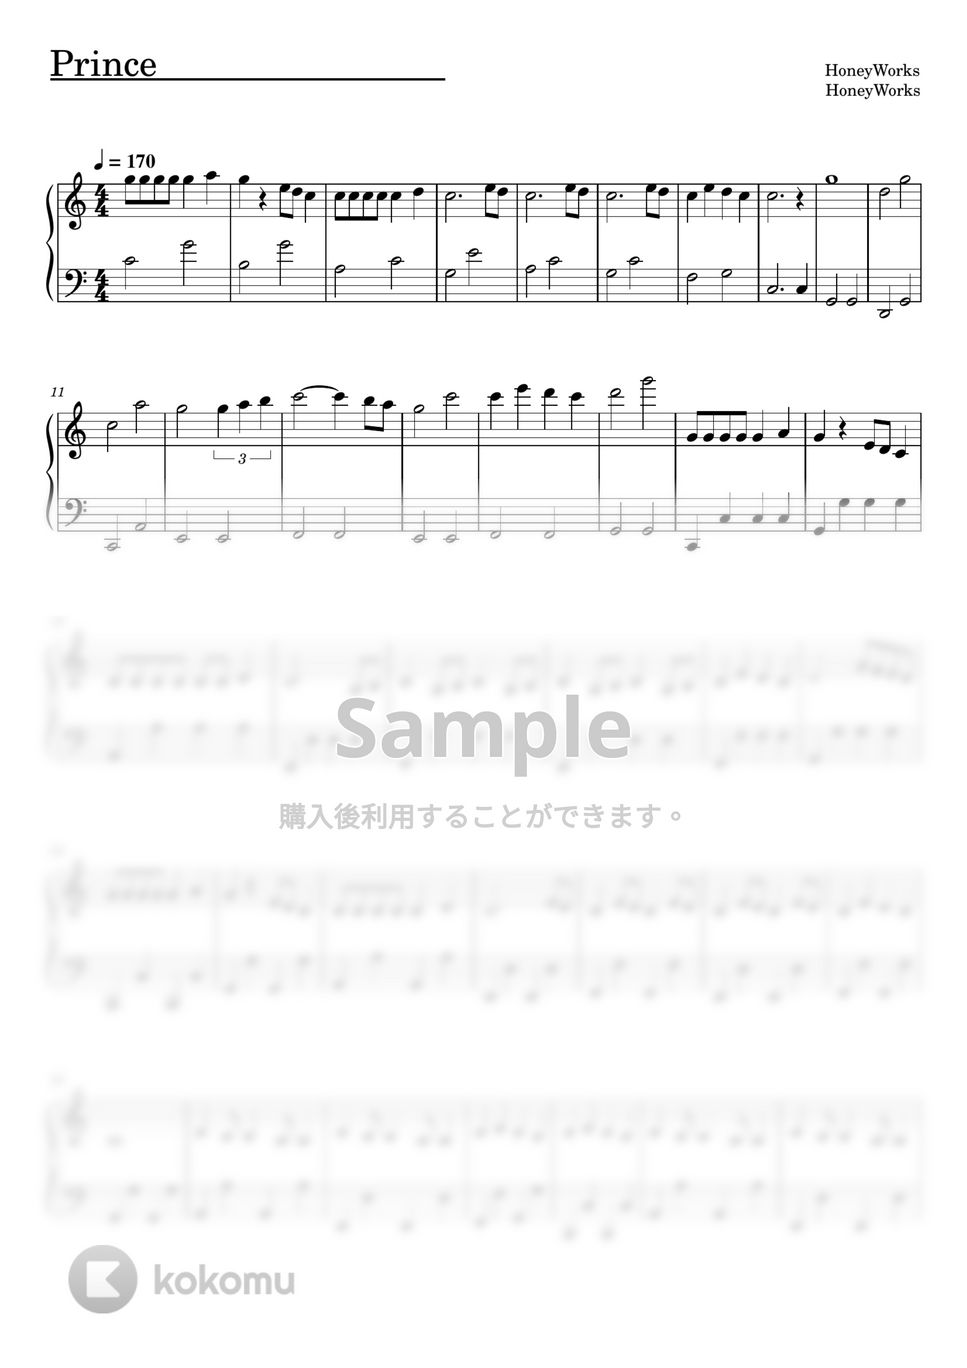 すとぷり - Prince (ピアノソロ譜) by 萌や氏